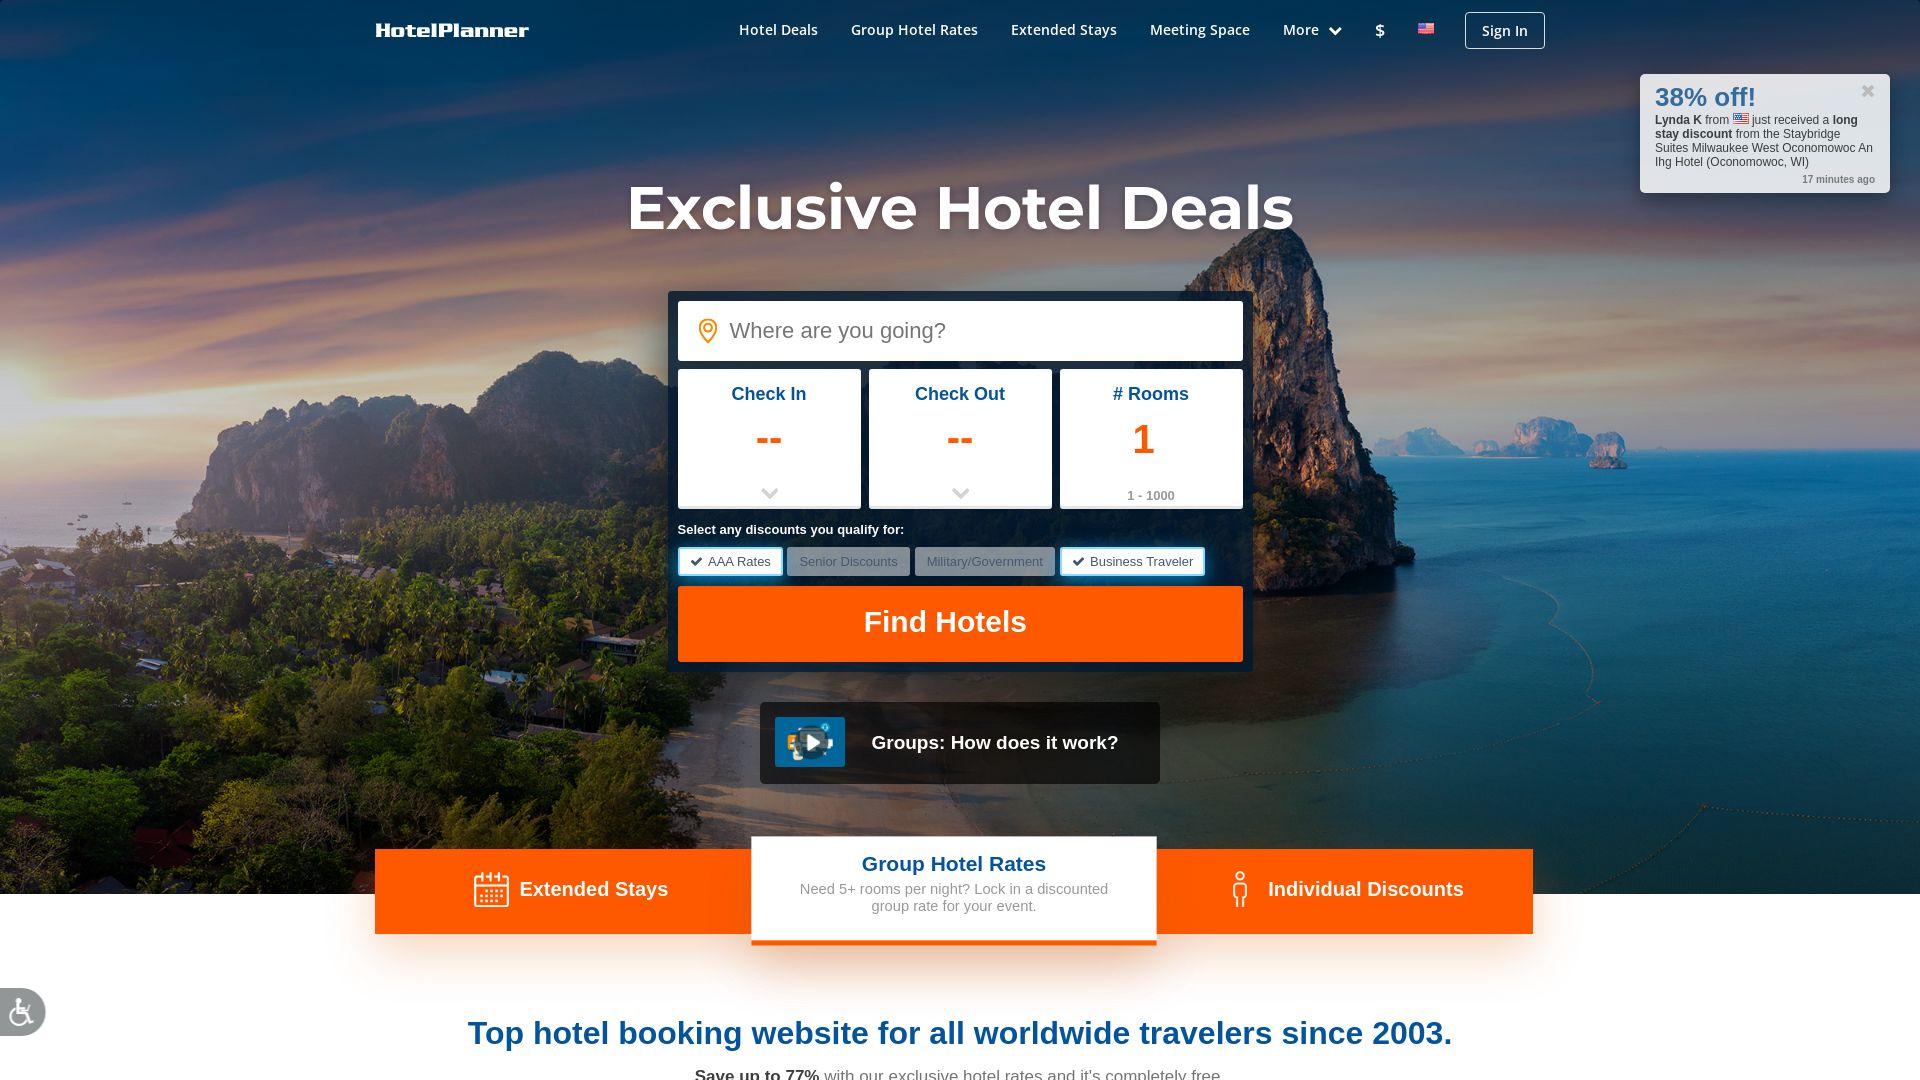 Website status hotelplanner.com is   ONLINE